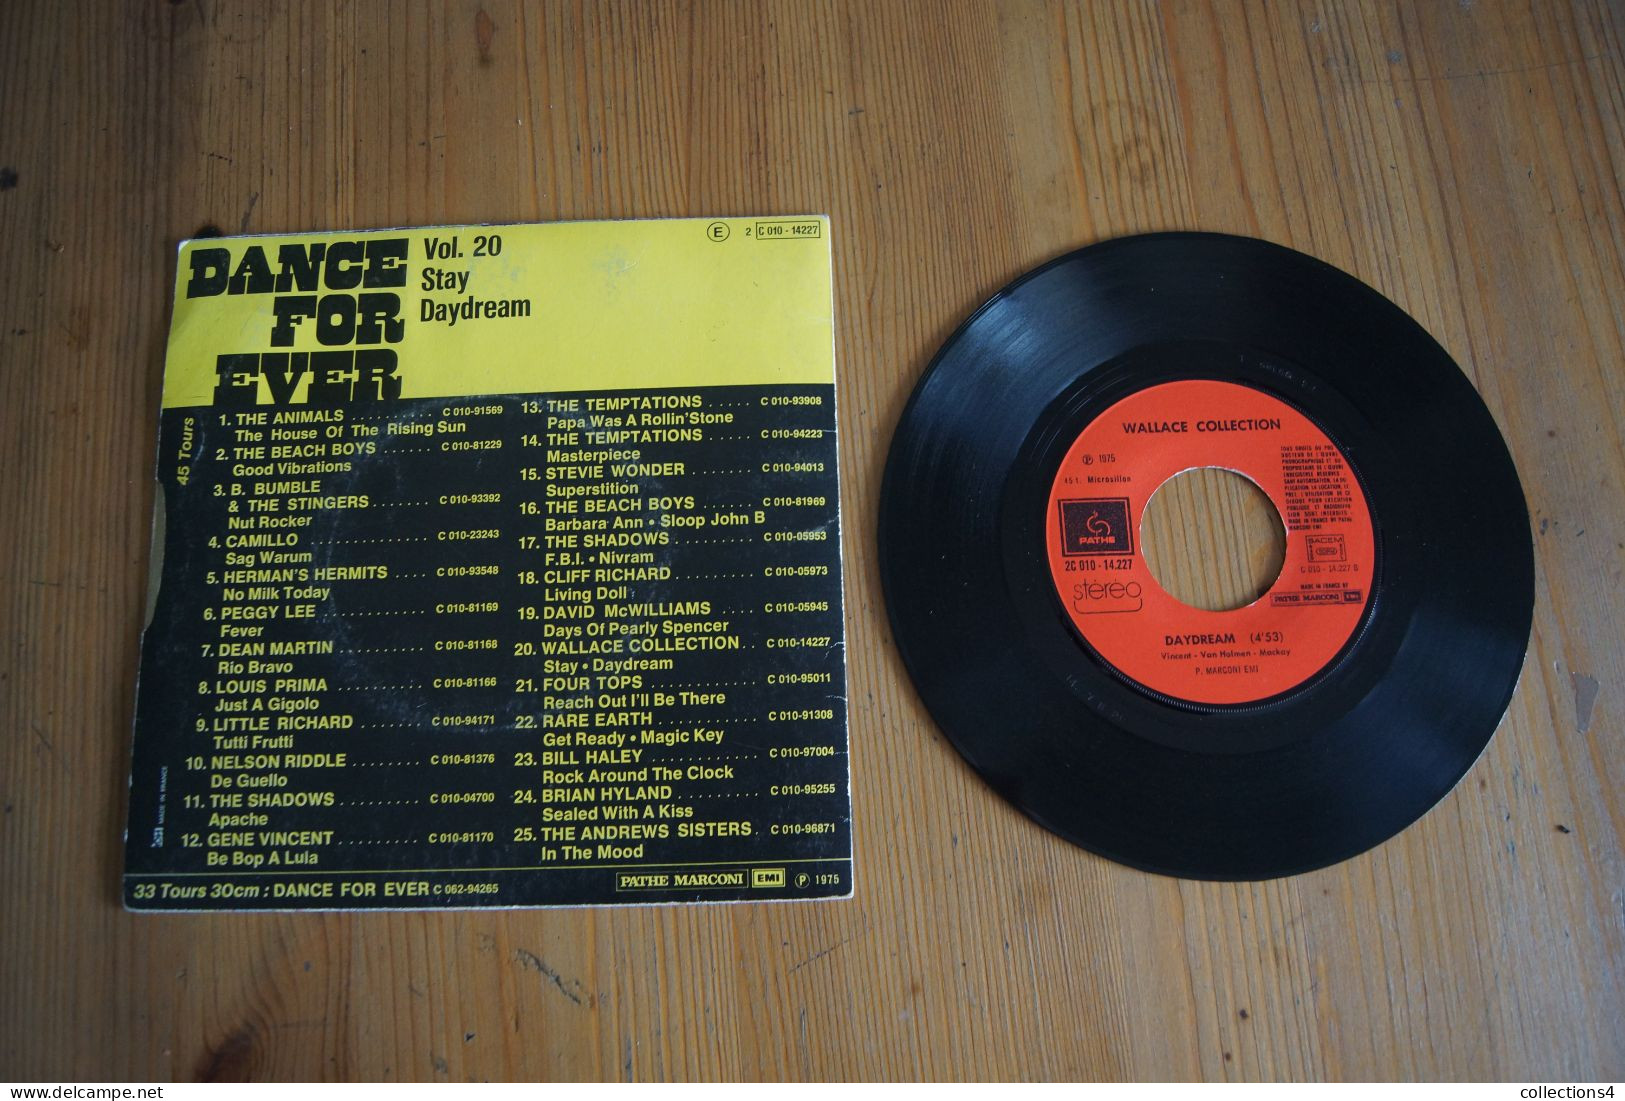 STAY WALLACE COLLECTION SP 1975 DU FILM UN BEAU MONSTRE VARIANTE - Soundtracks, Film Music